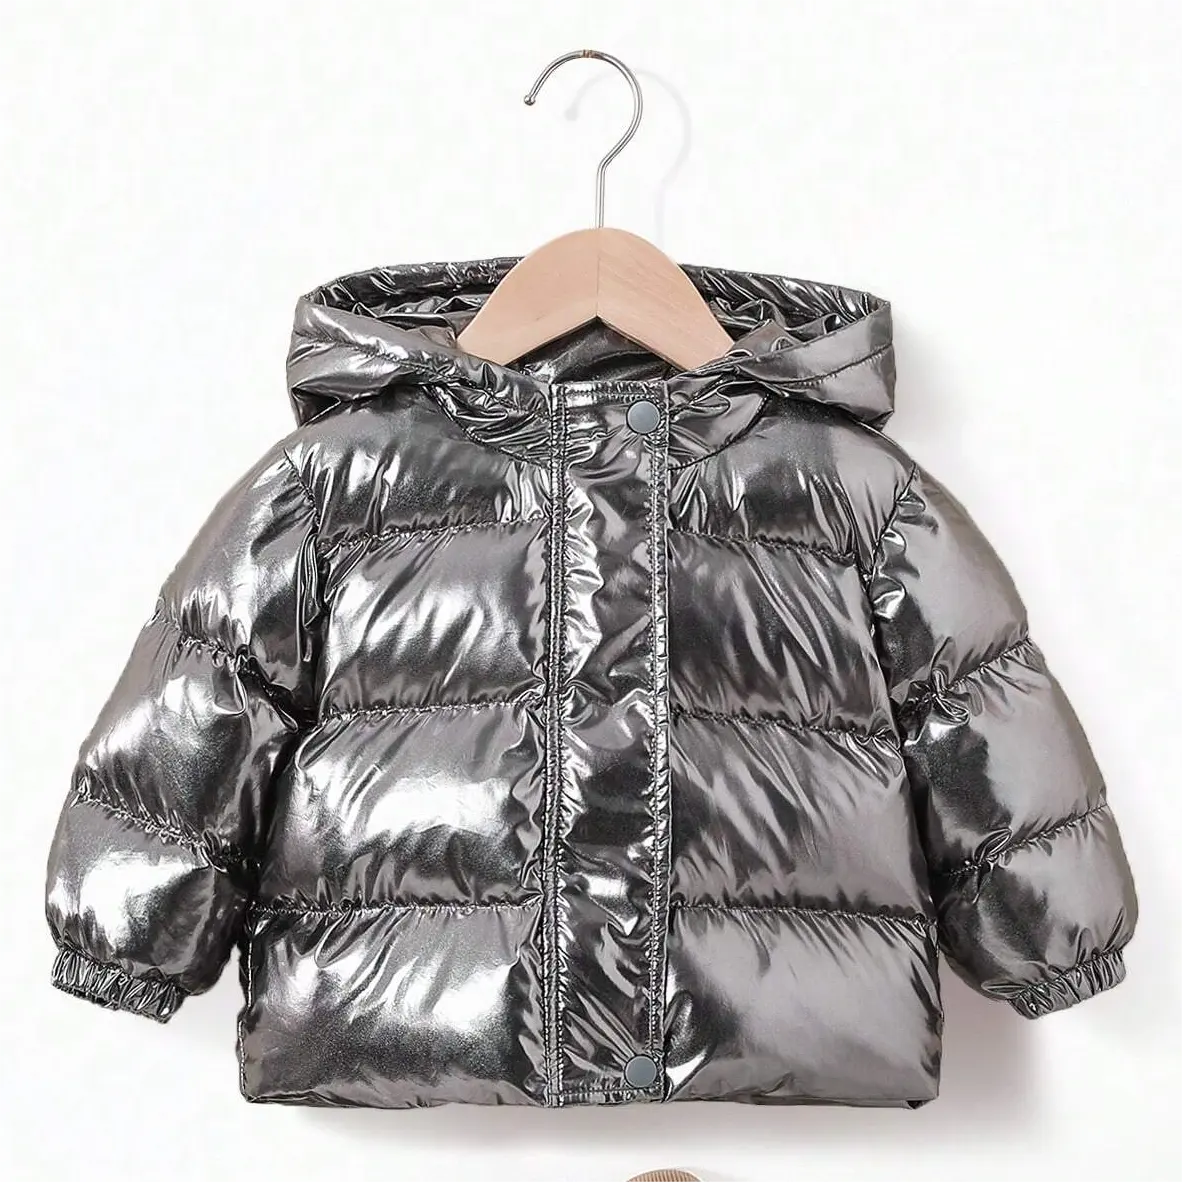 Jaqueta de inverno quente para crianças, casaco de bolha acolchoado prateado de alta qualidade, casaco curto para meninos